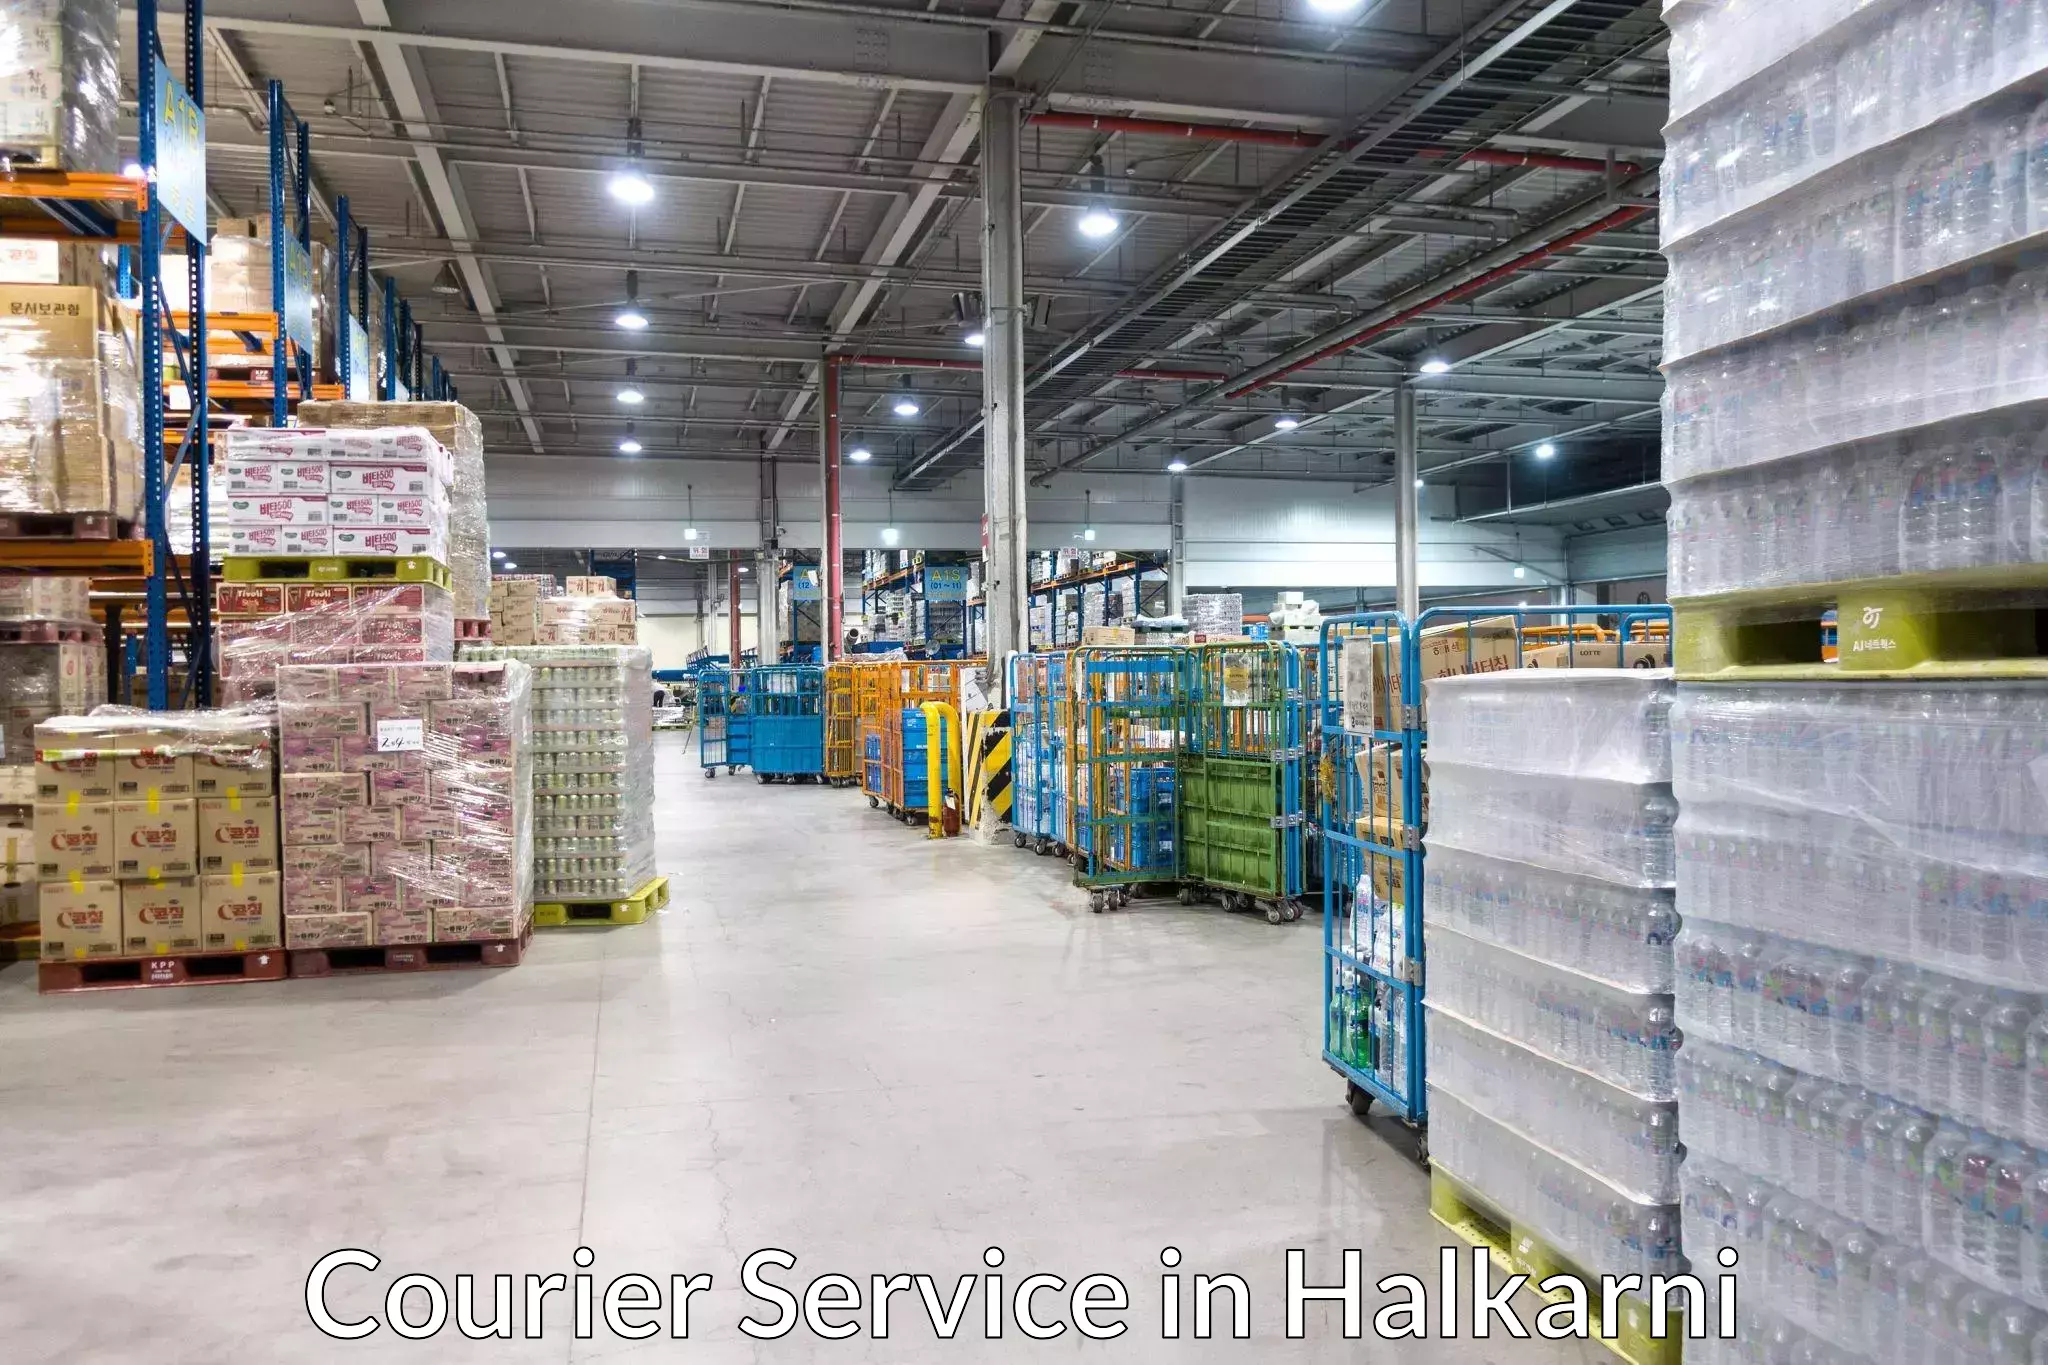 Express logistics providers in Halkarni